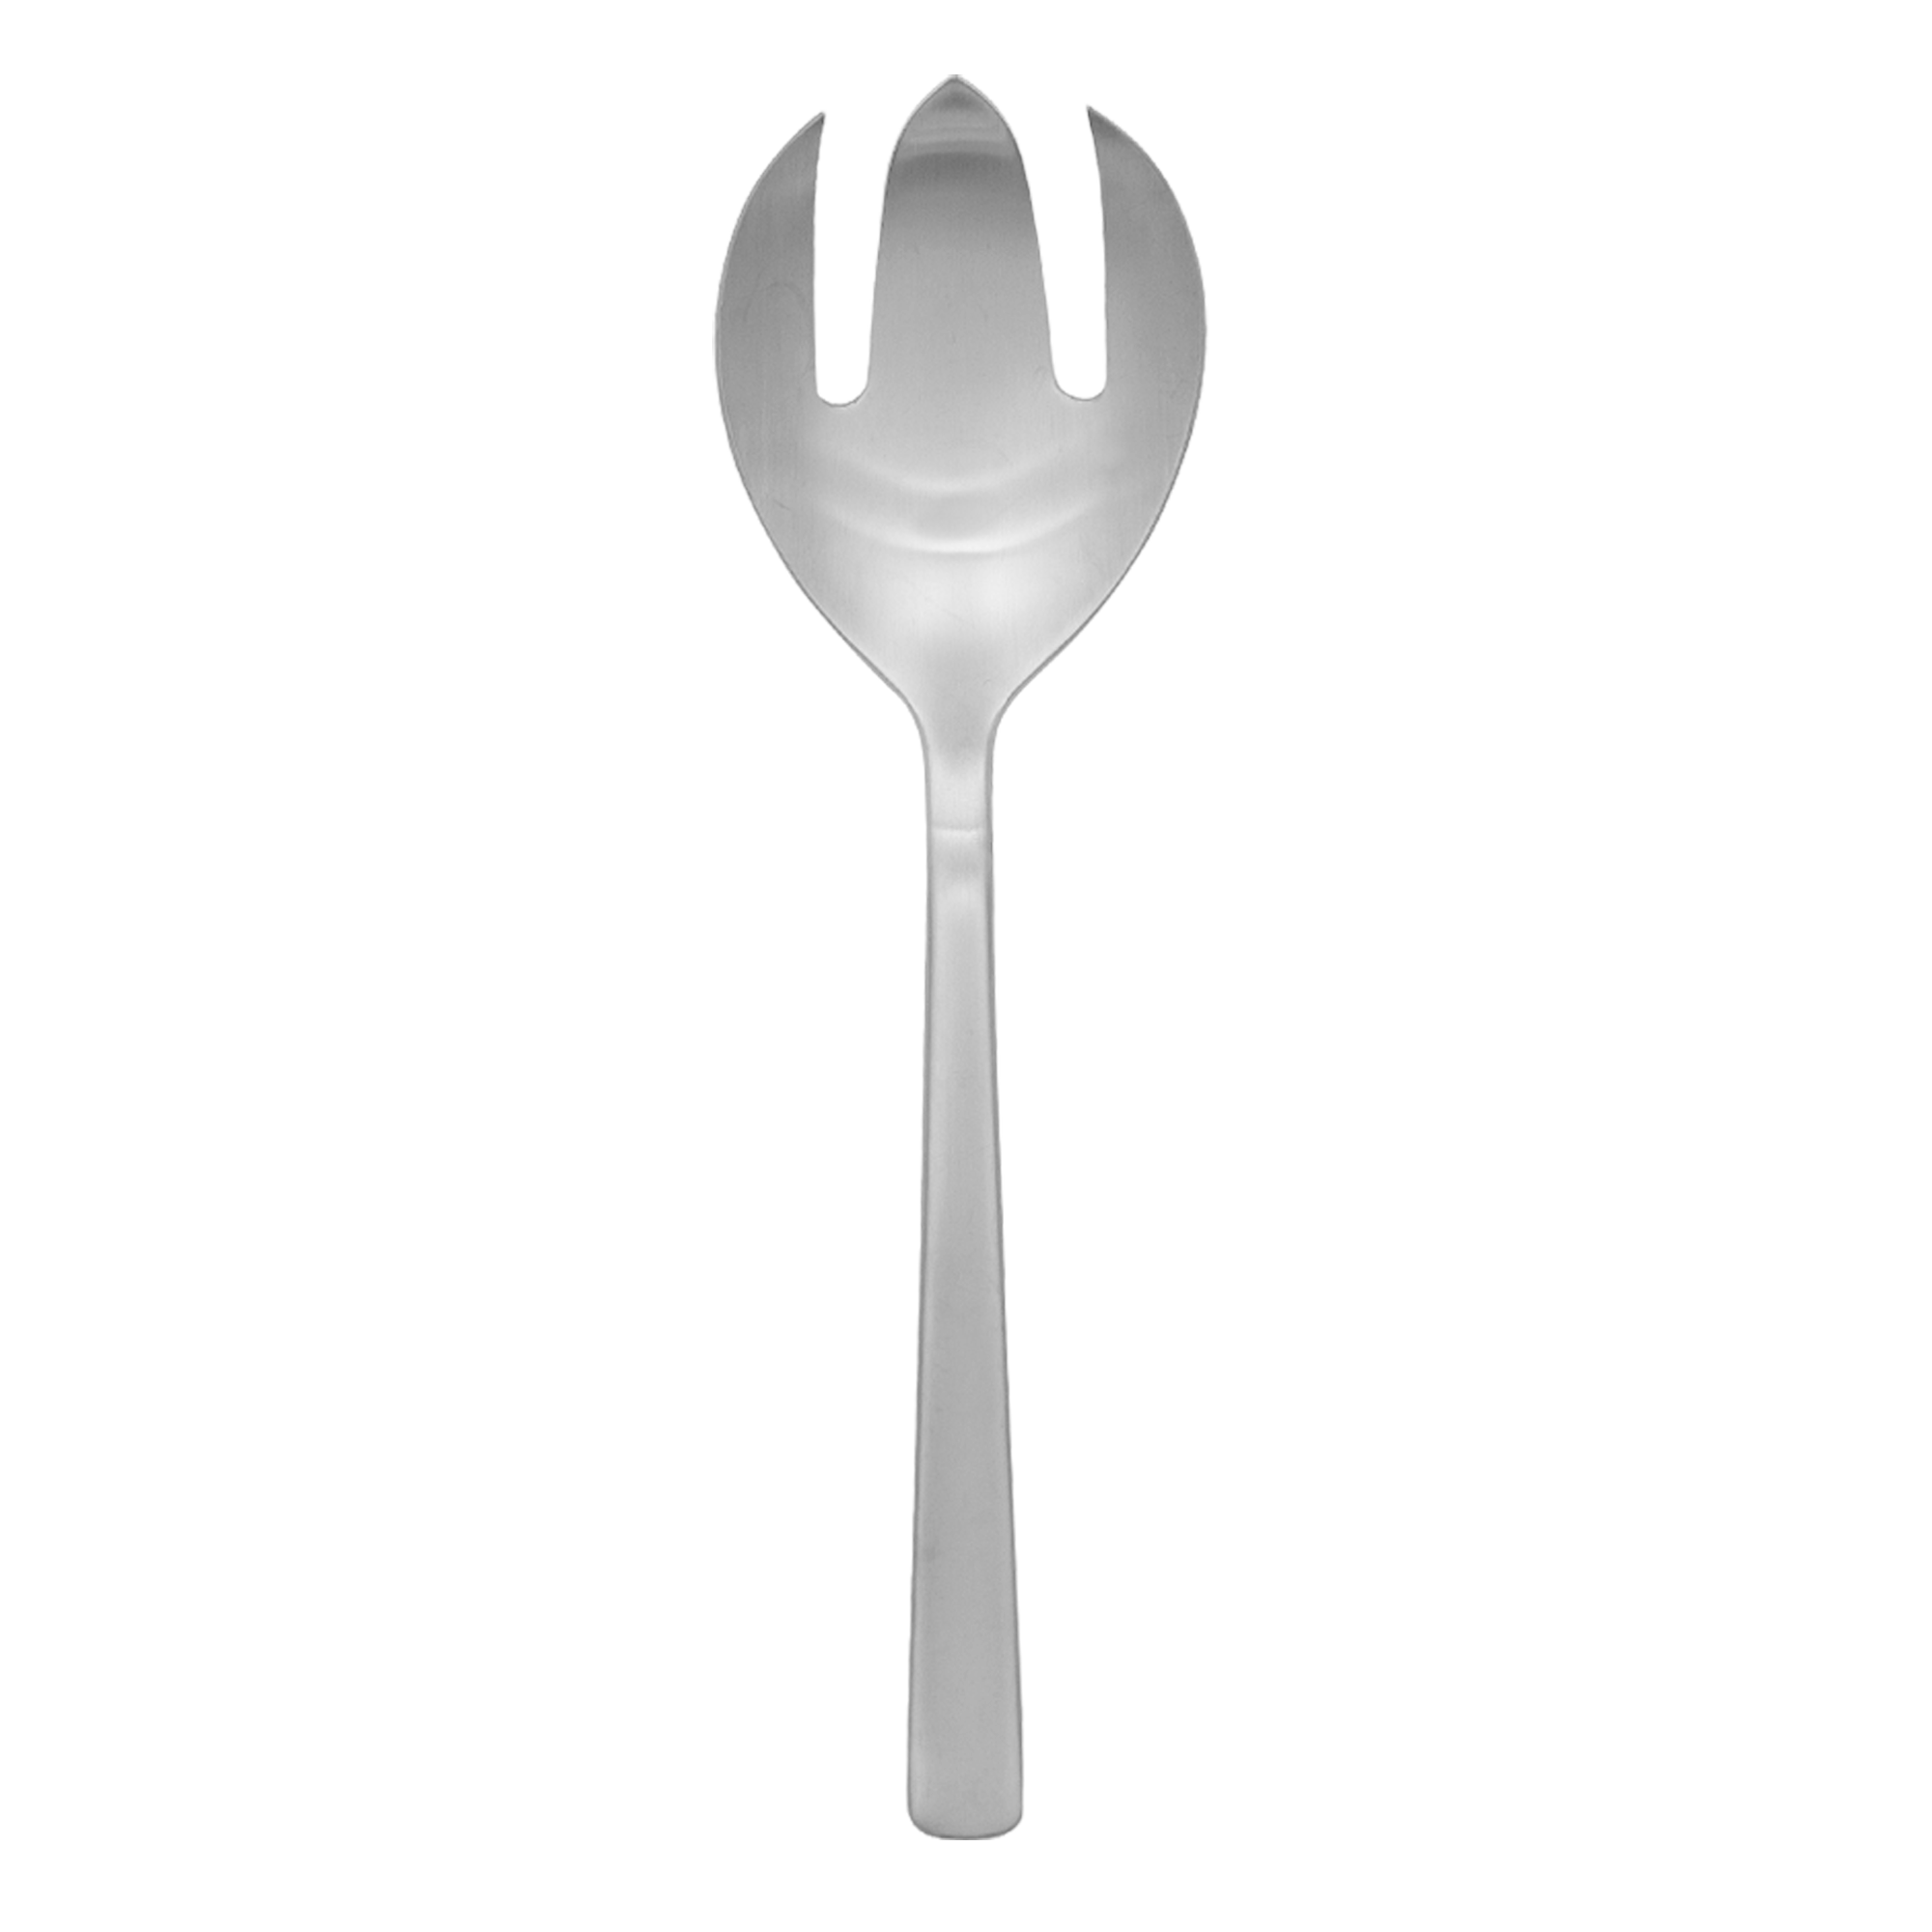 Serving fork